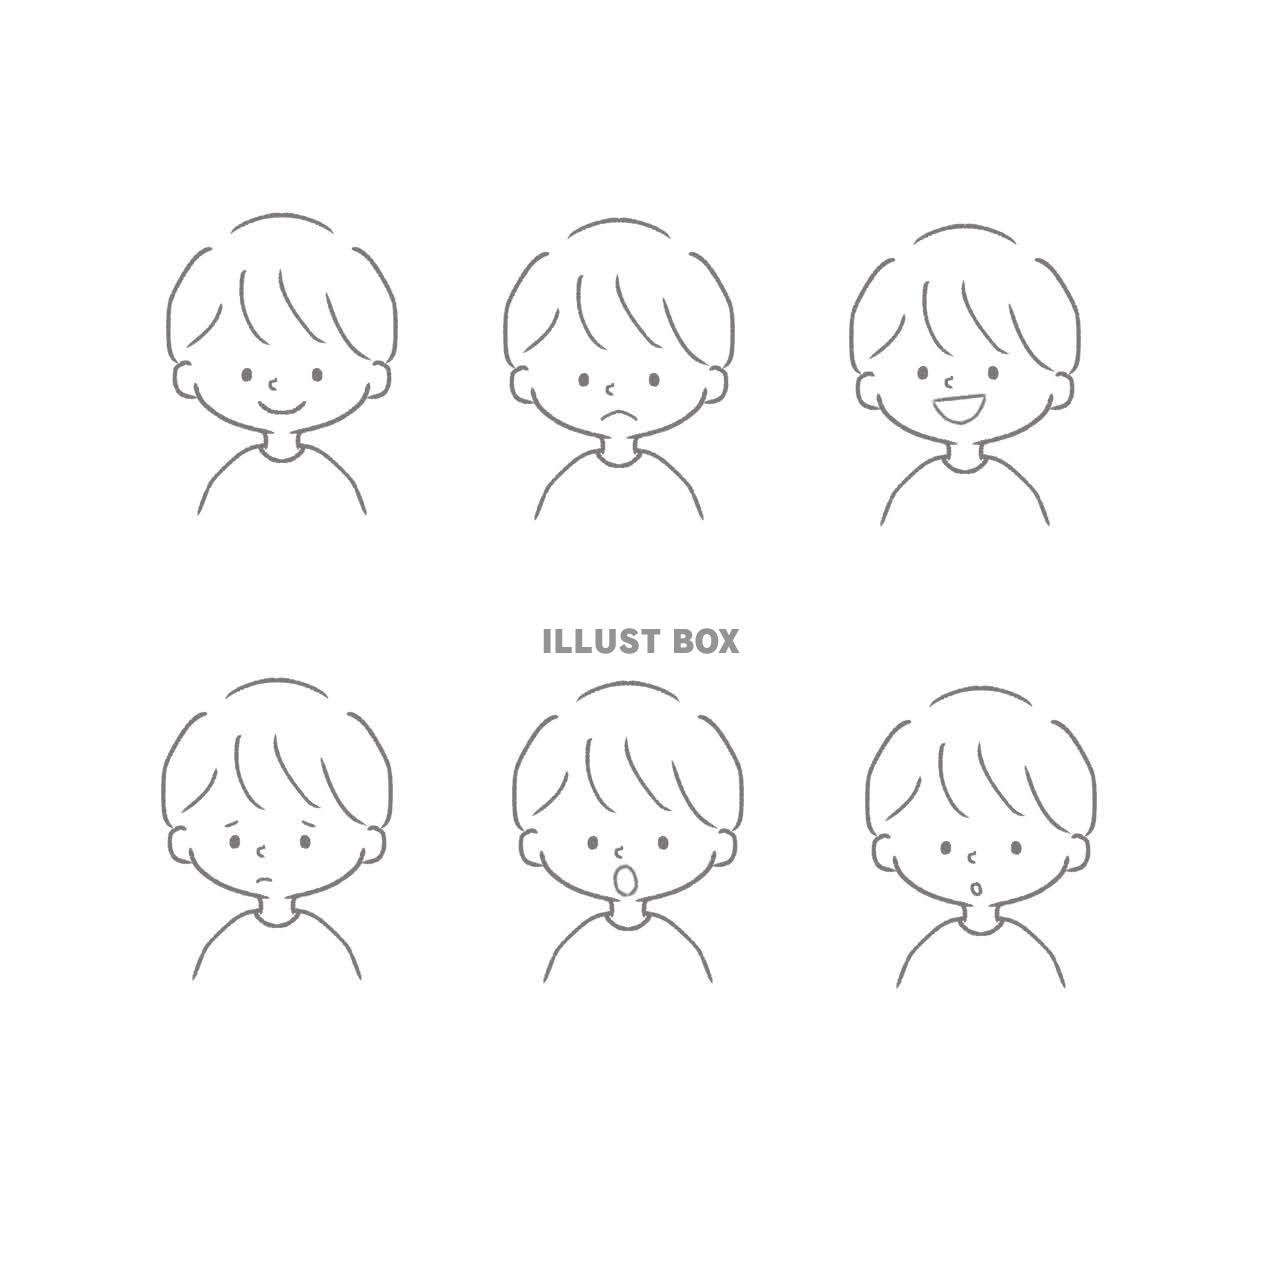 手書き風のシンプルで可愛い男の子の6種類の表情セット